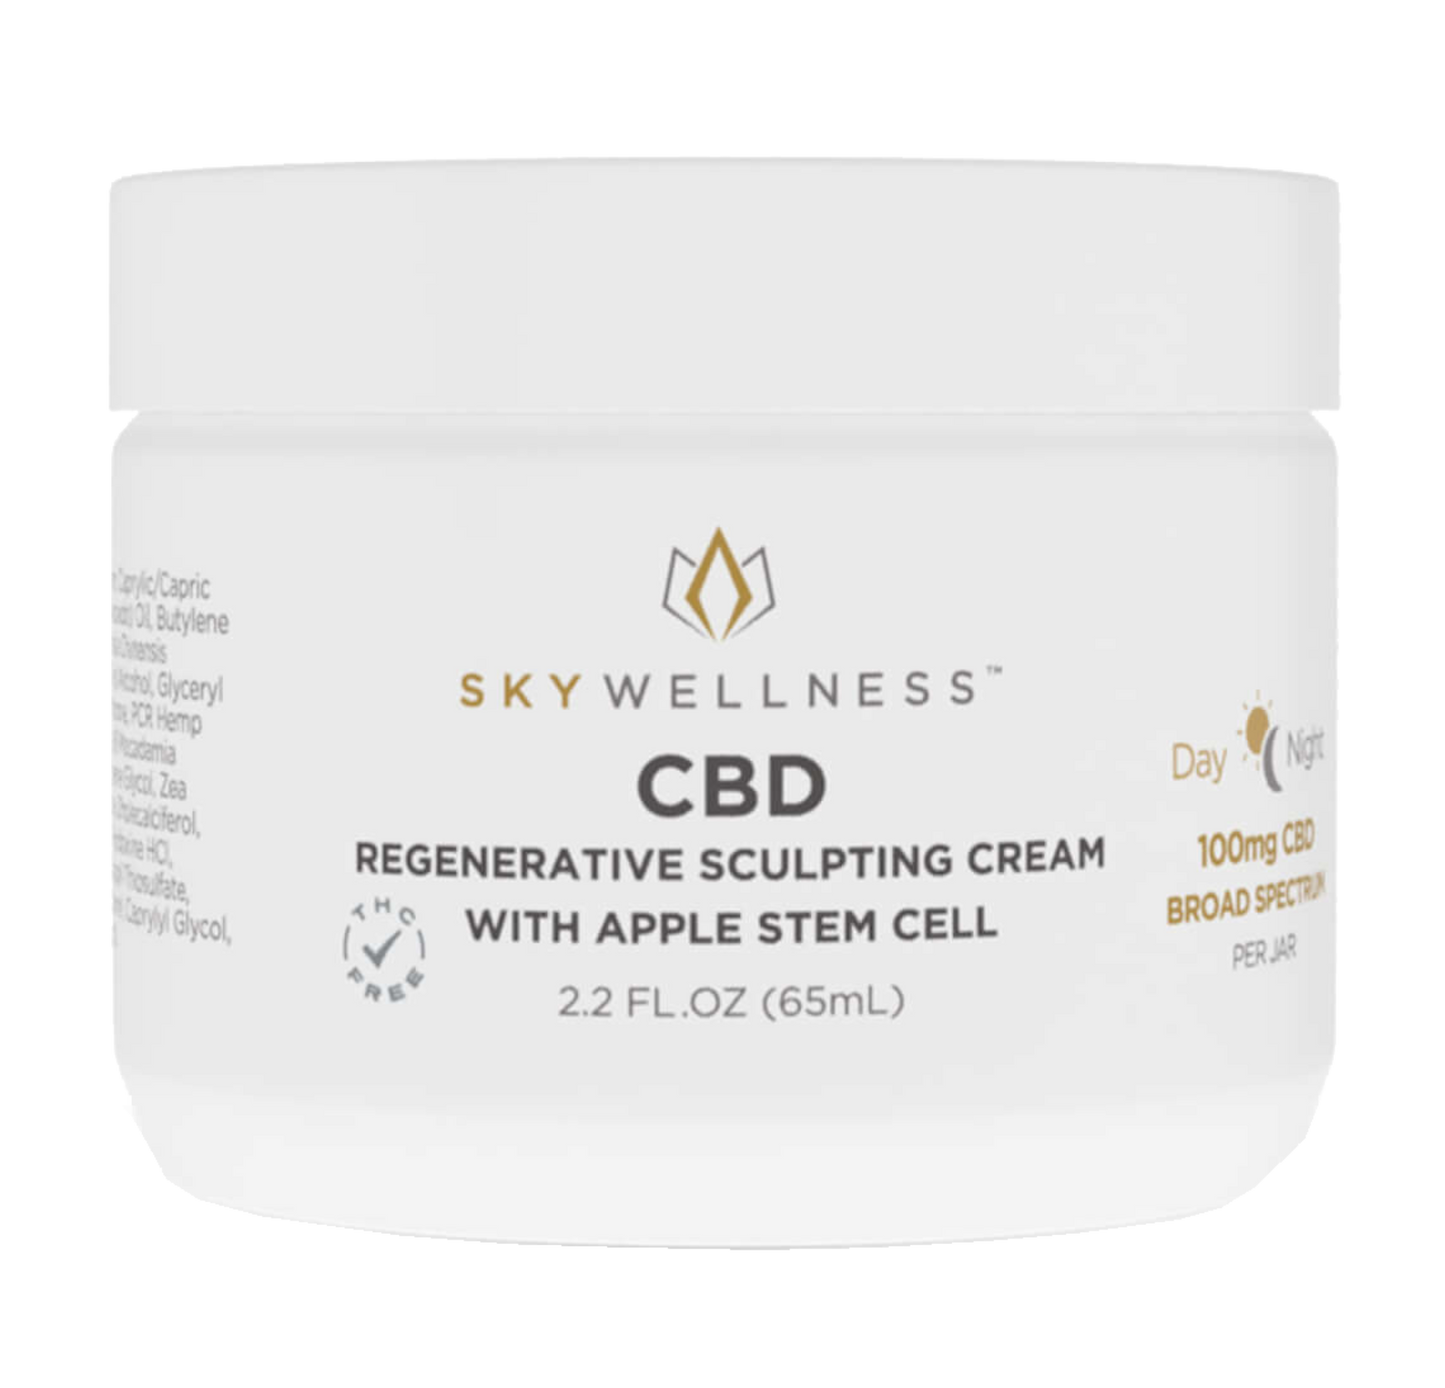 Sky Wellness Broad Spectrum CBD Cream, Regenerative Sculpting - 100mg (a Cream) made by Sky Wellness sold at CBD Emporium